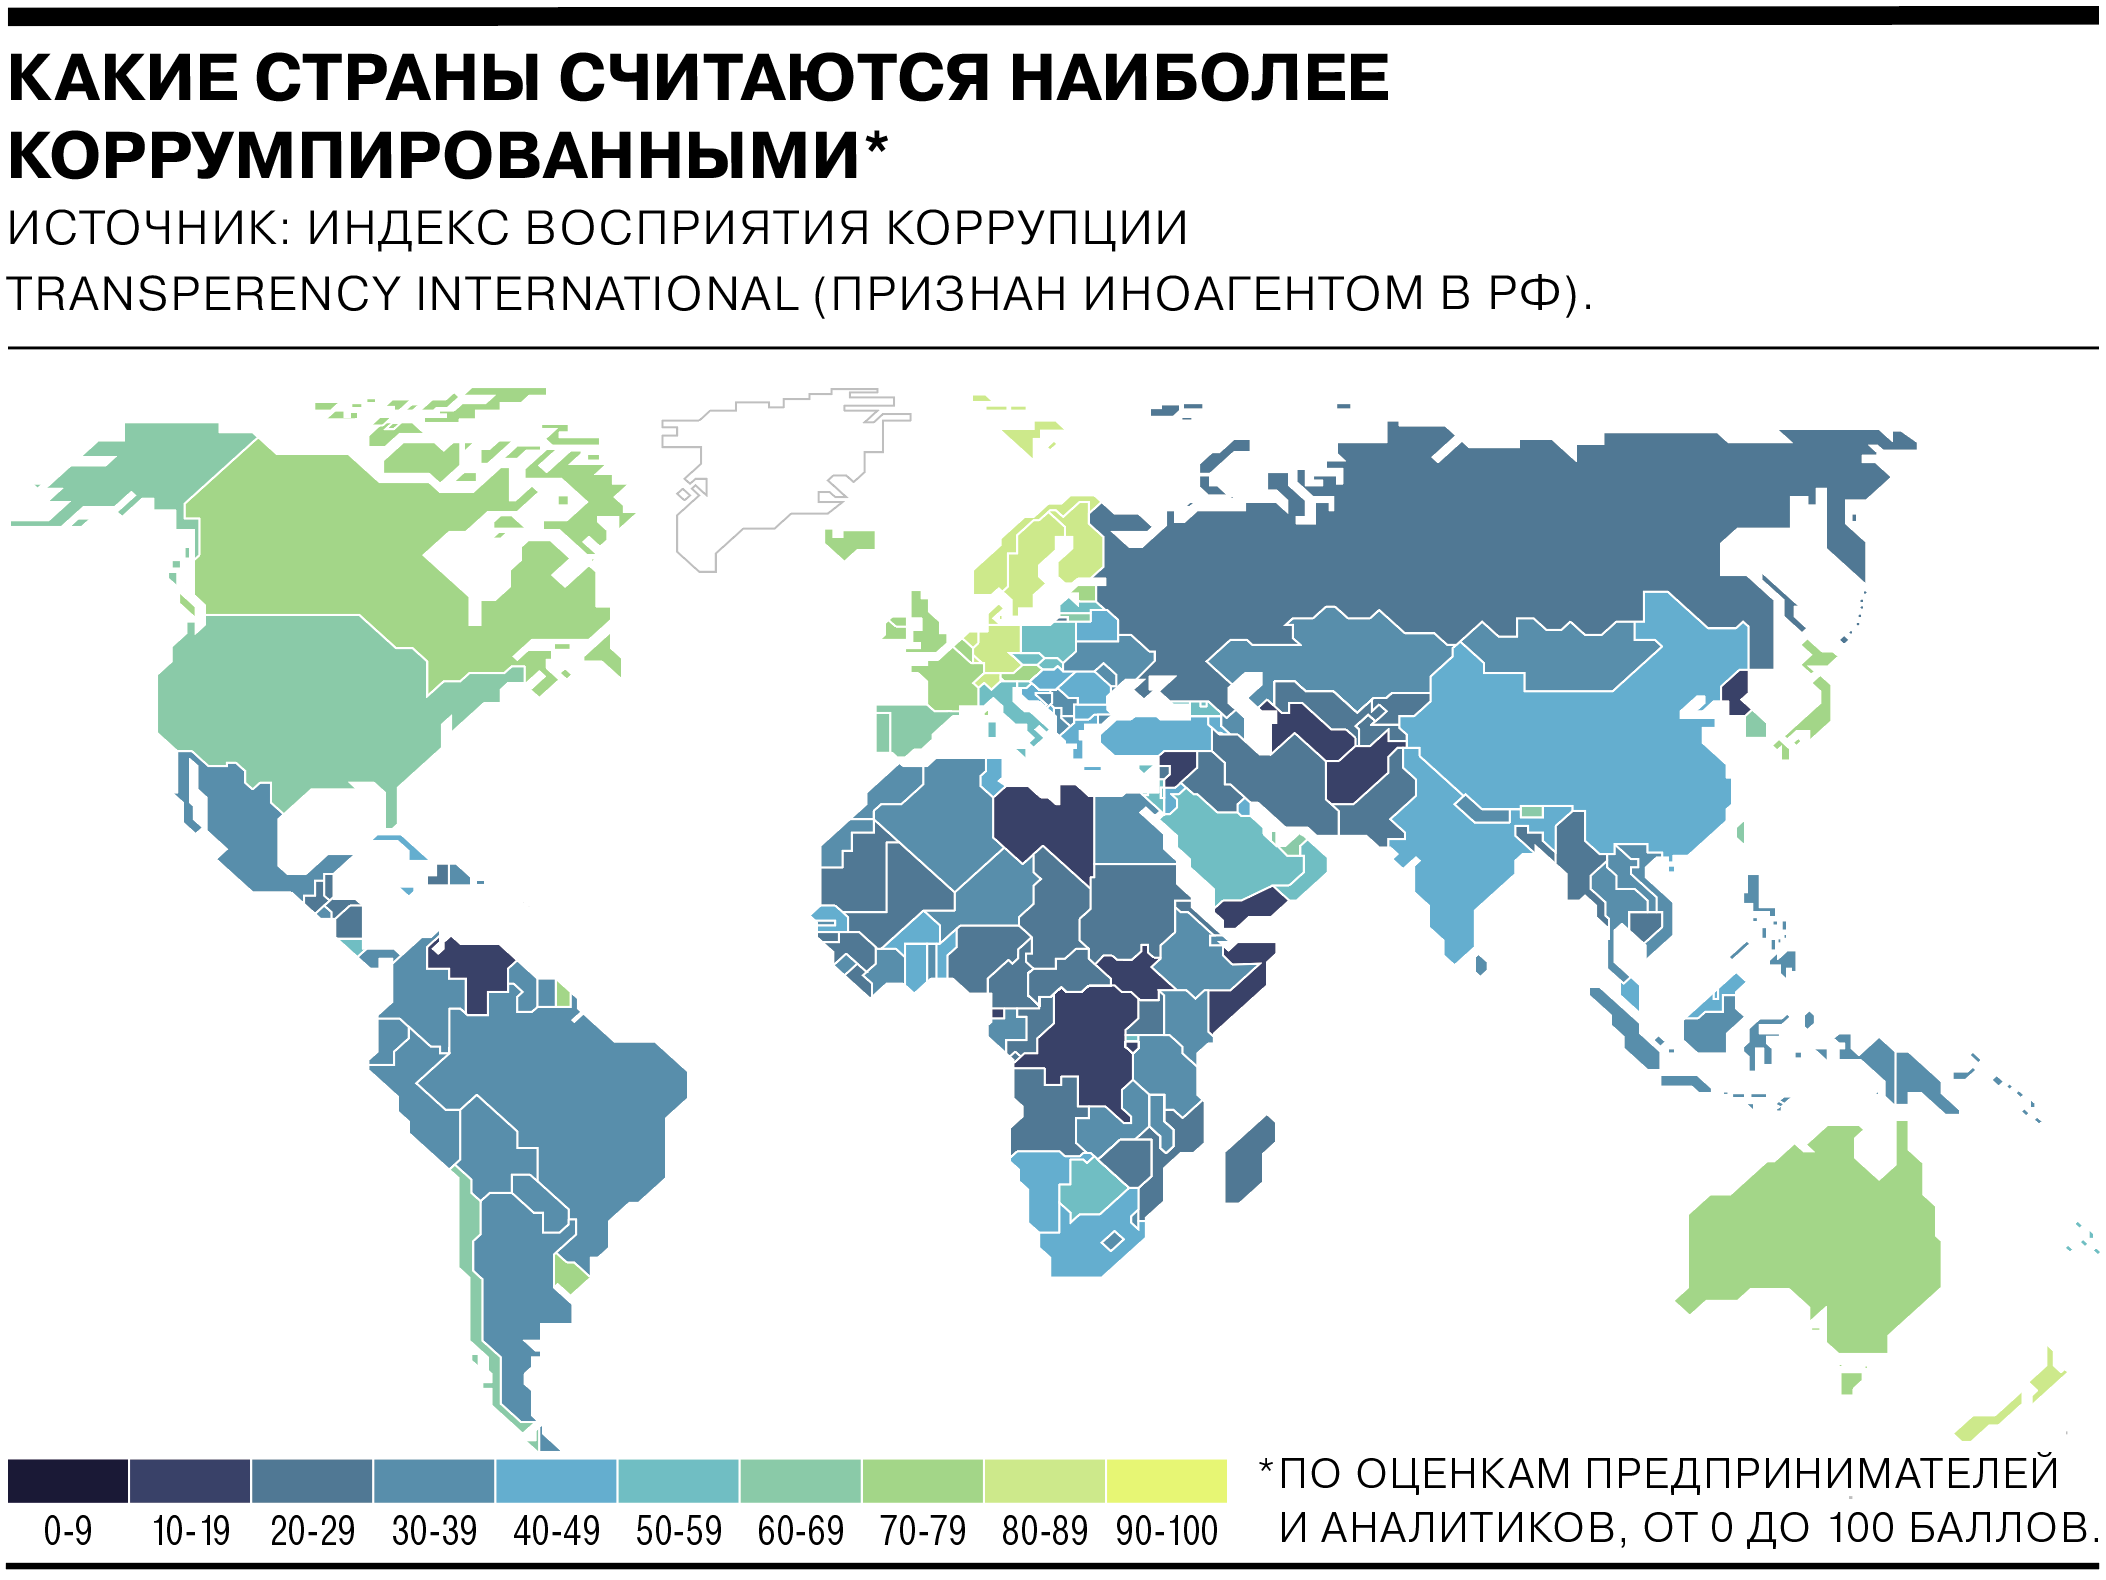 Коррупция в России и мире — в шести графиках